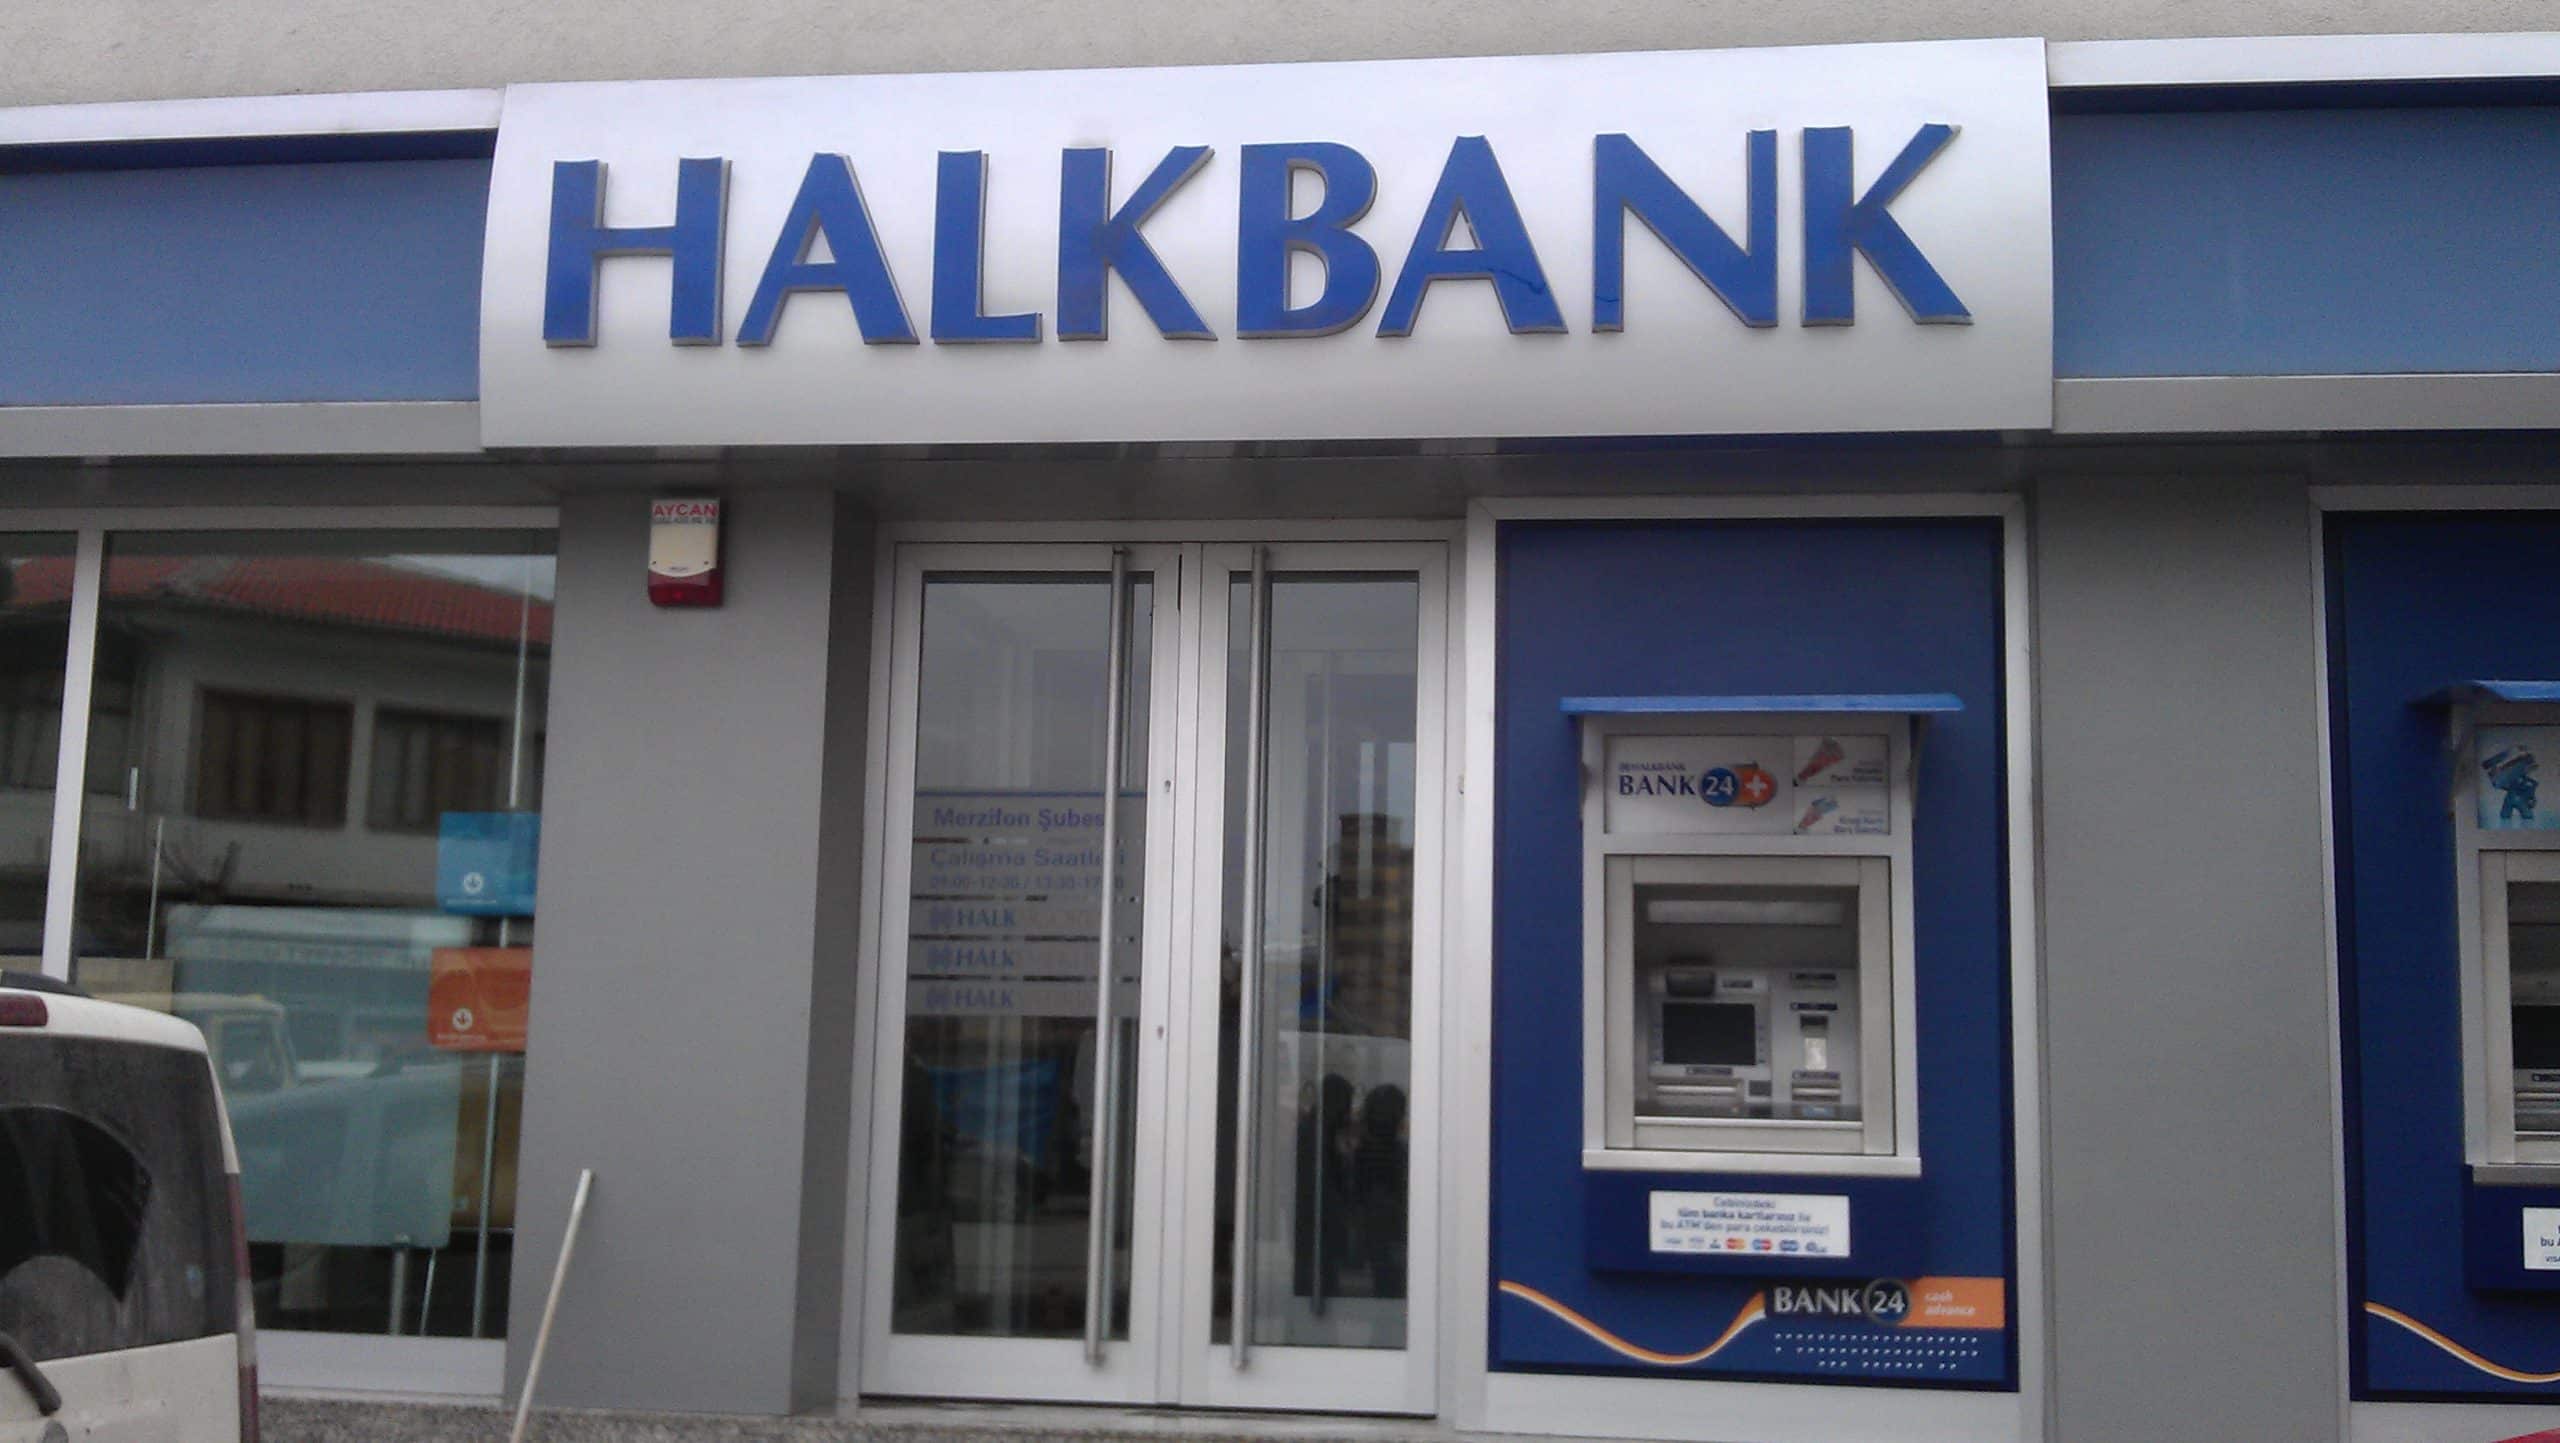 Halkbank Турция. Турецкий Халк банк. Халк банк Турция Банкомат. Халк банк Банкомат. Халк банк вход